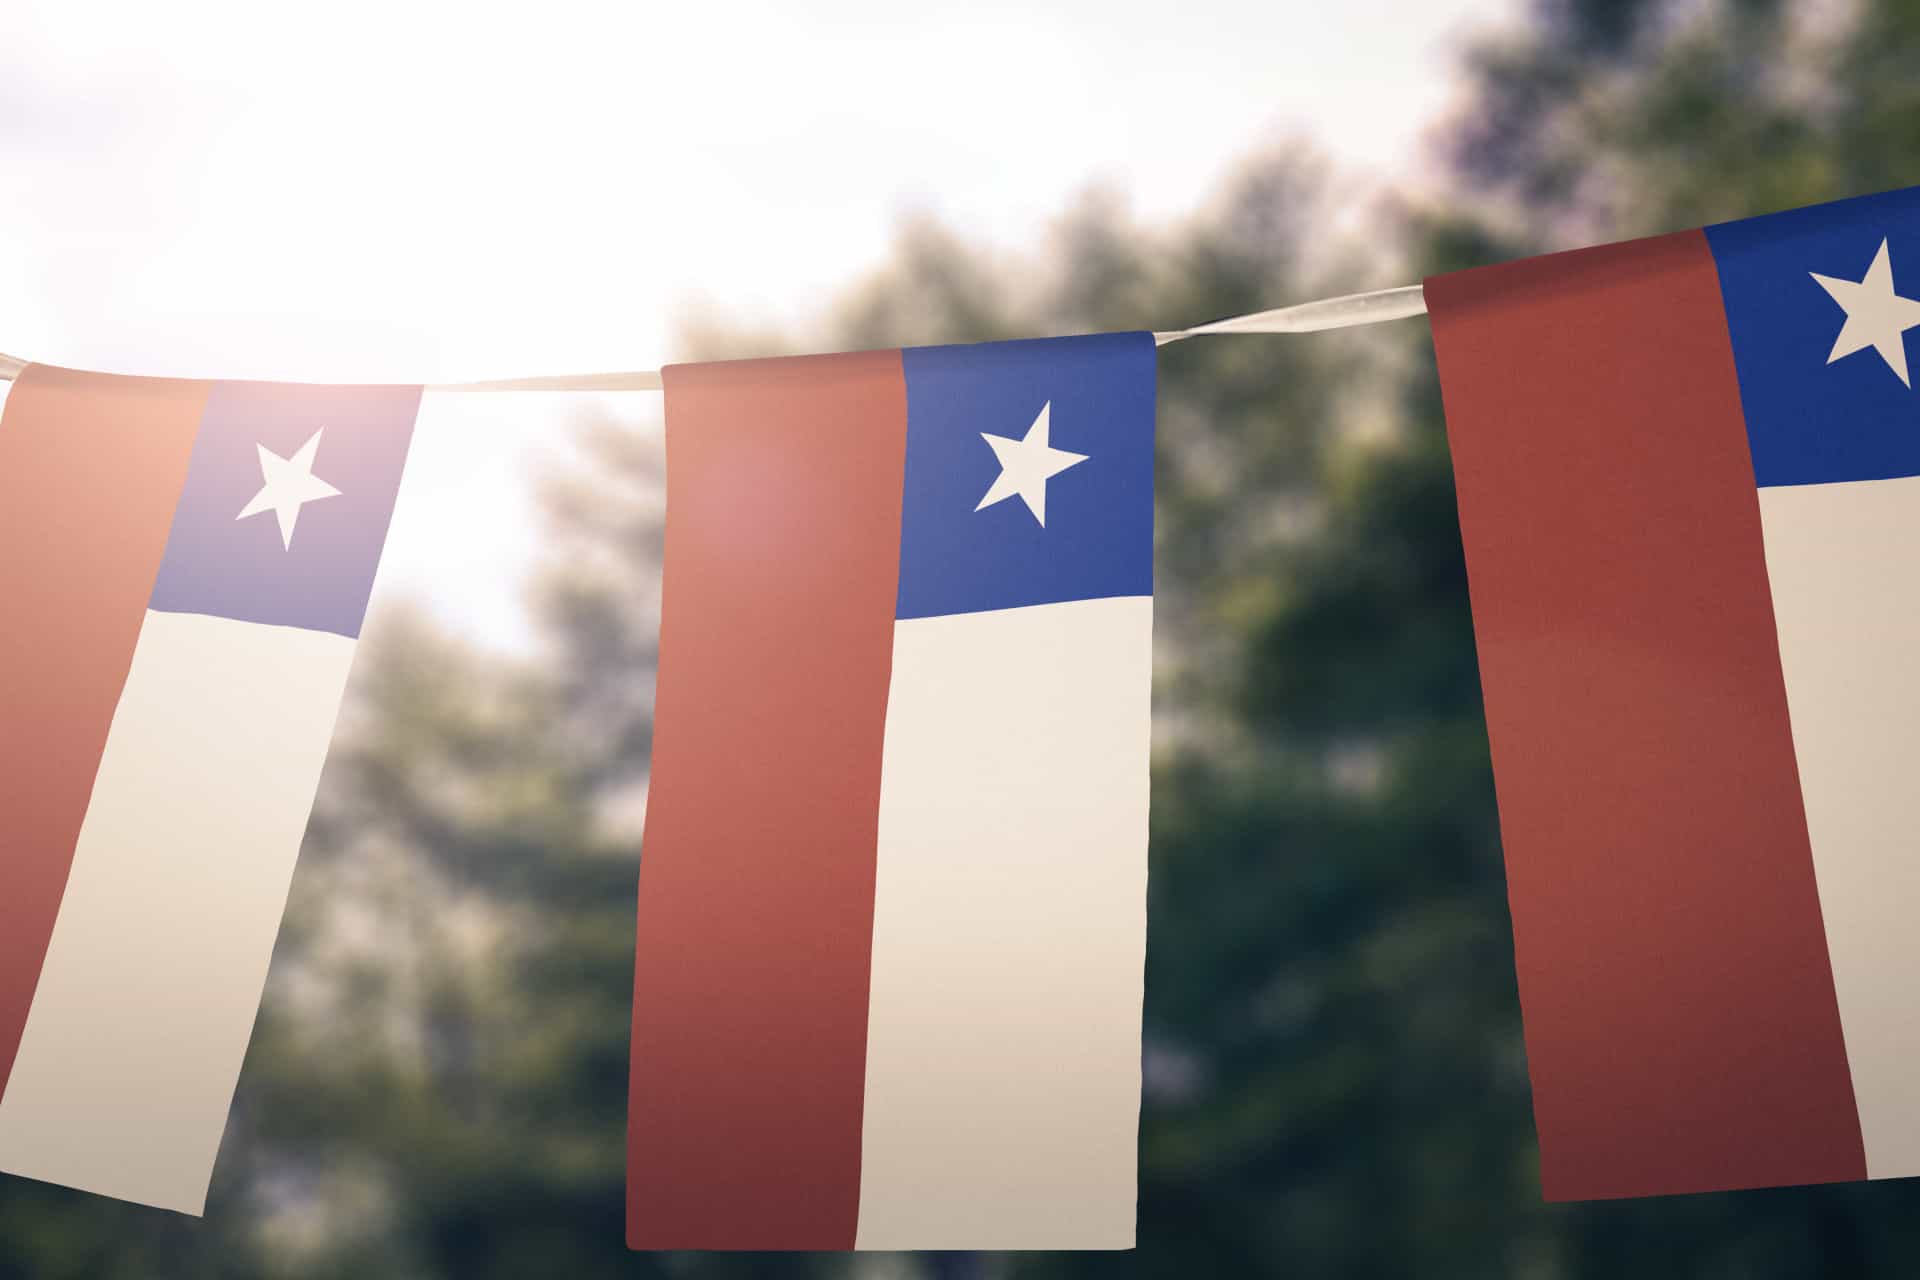 Au Chili, une loi oblige les habitants à hisser le drapeau chilien le 21 mai (le jour de la marine) et les 18 et 19 septembre (les jours de Fêtes de la Patrie). Ne pas le faire peut valoir une amende.